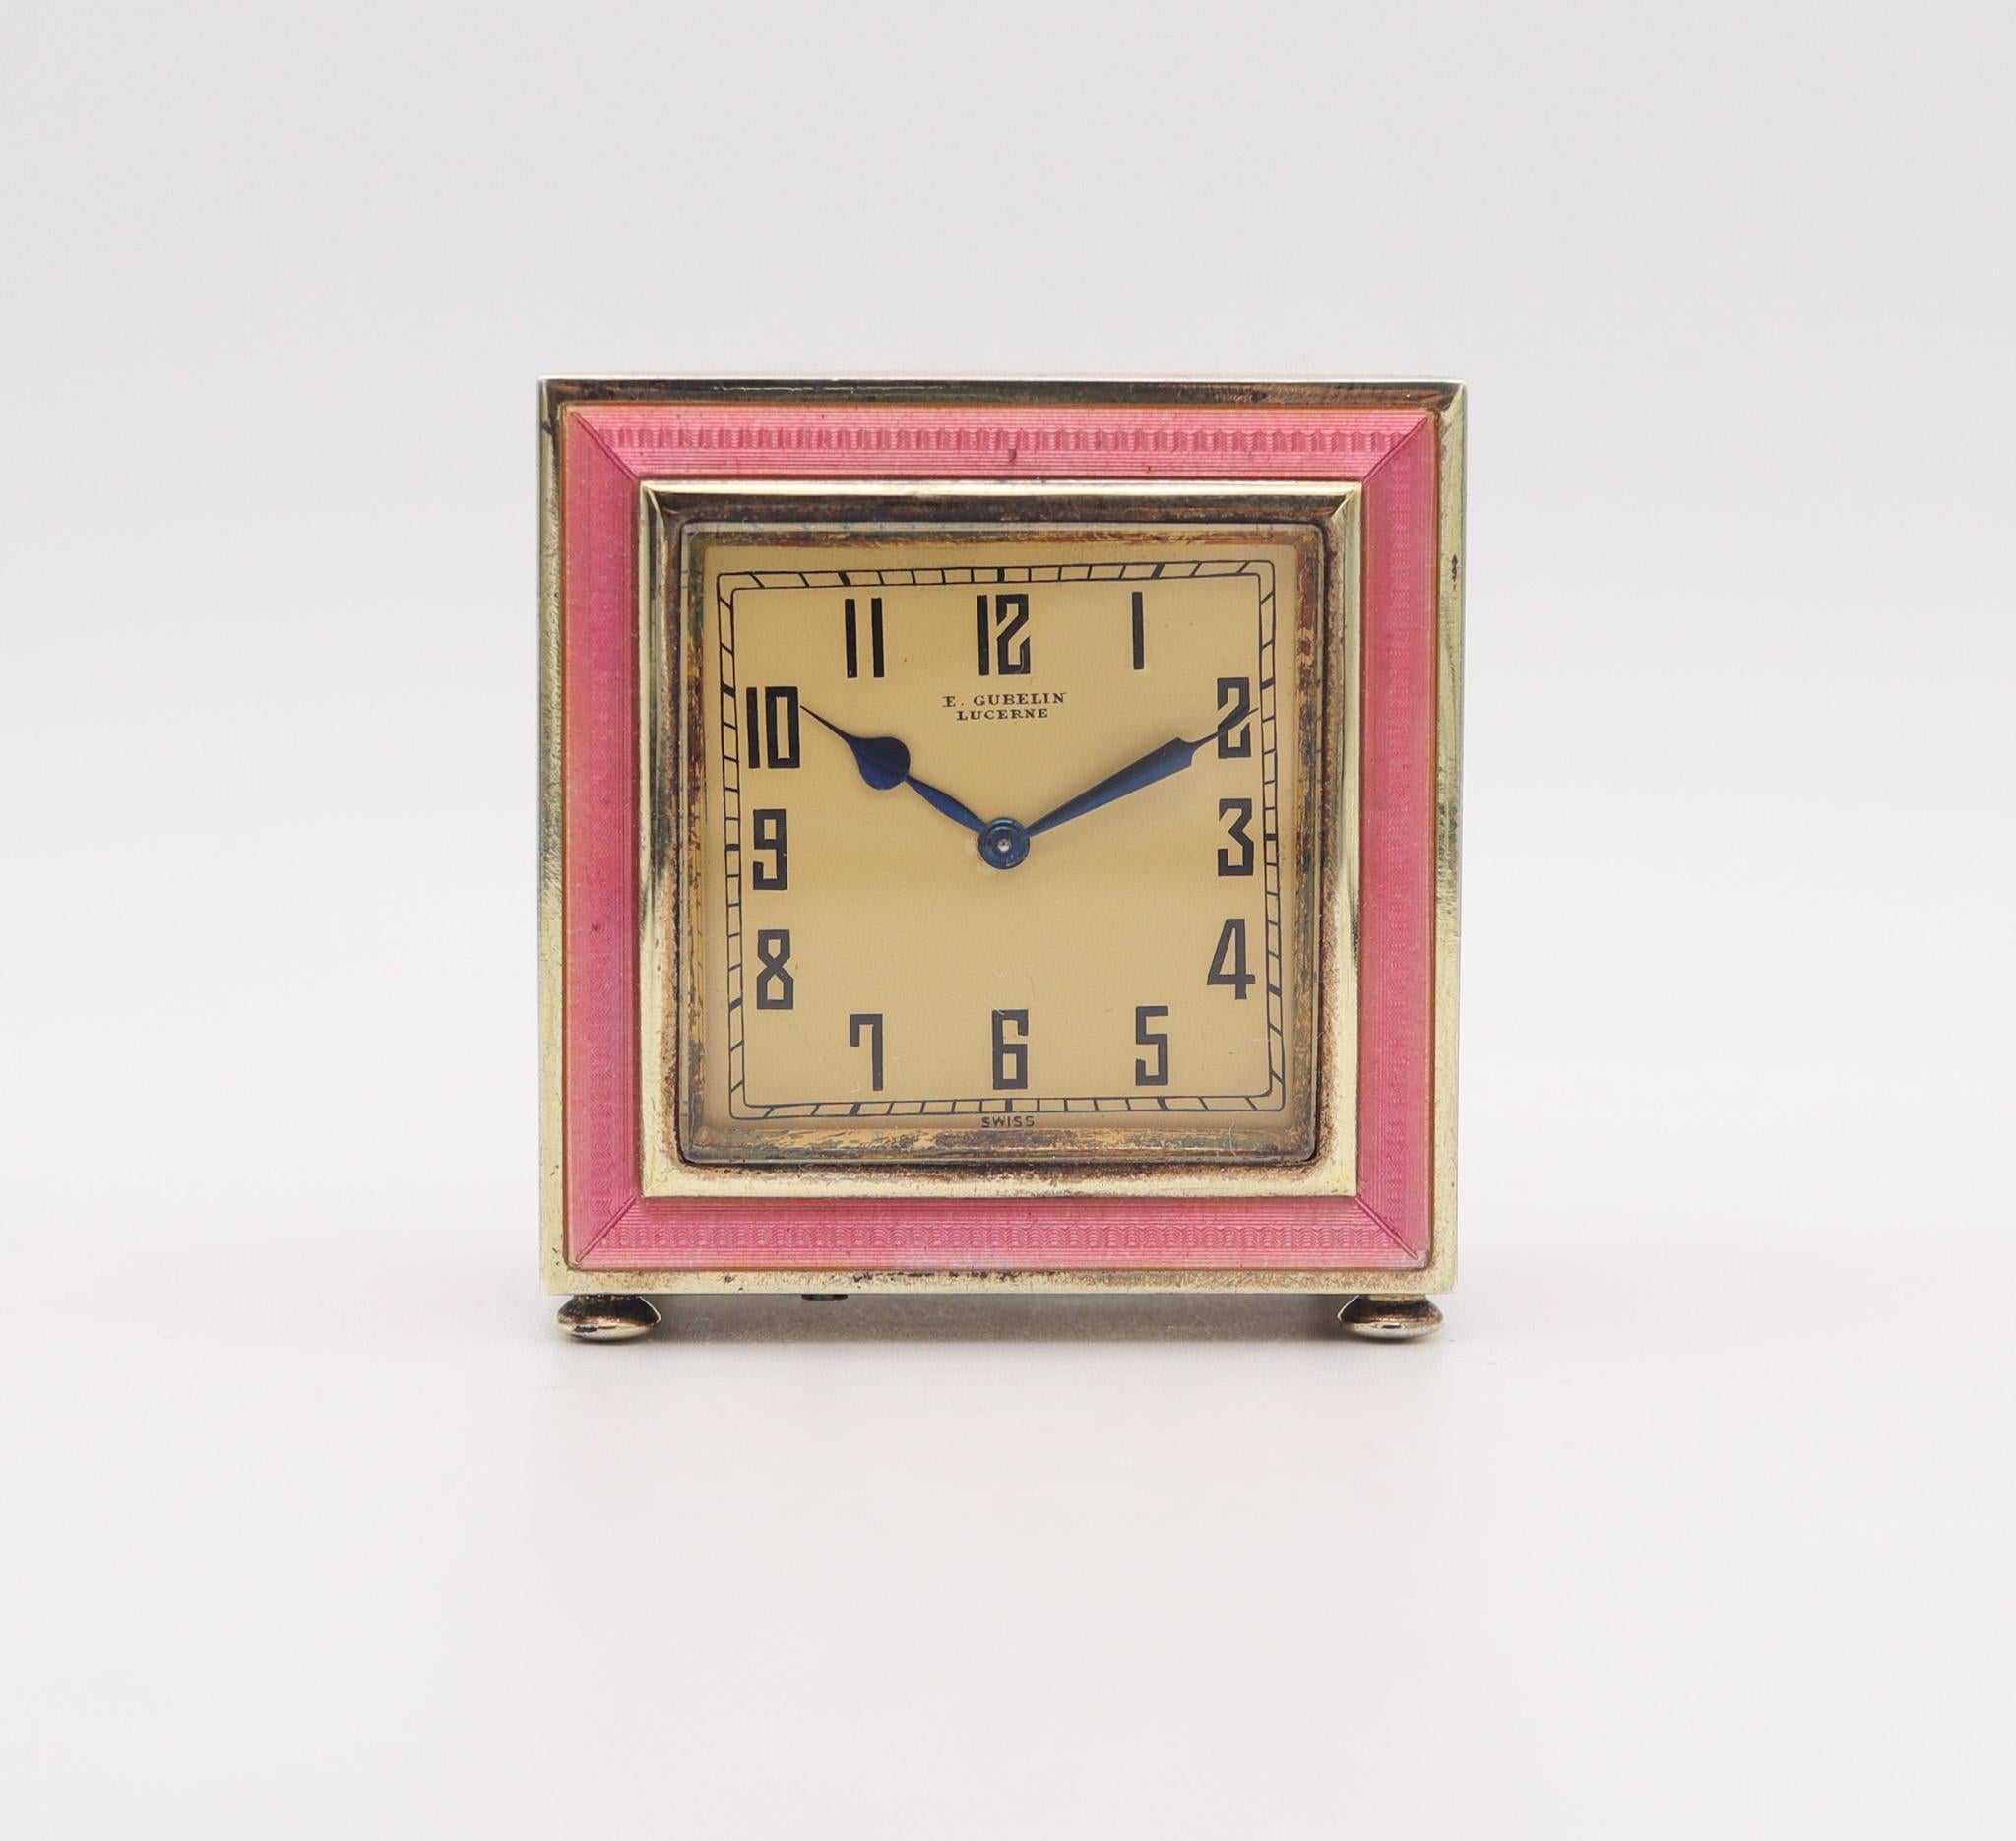 Horloge de bureau boudoir miniature Art déco réalisée par Gübelin.

Fabuleuse horloge de bureau miniature, créée à Lucerne en Suisse par E Gübelin & Co. durant la période art déco, vers 1925. Cette horloge de boudoir, de forme carrée, est réalisée